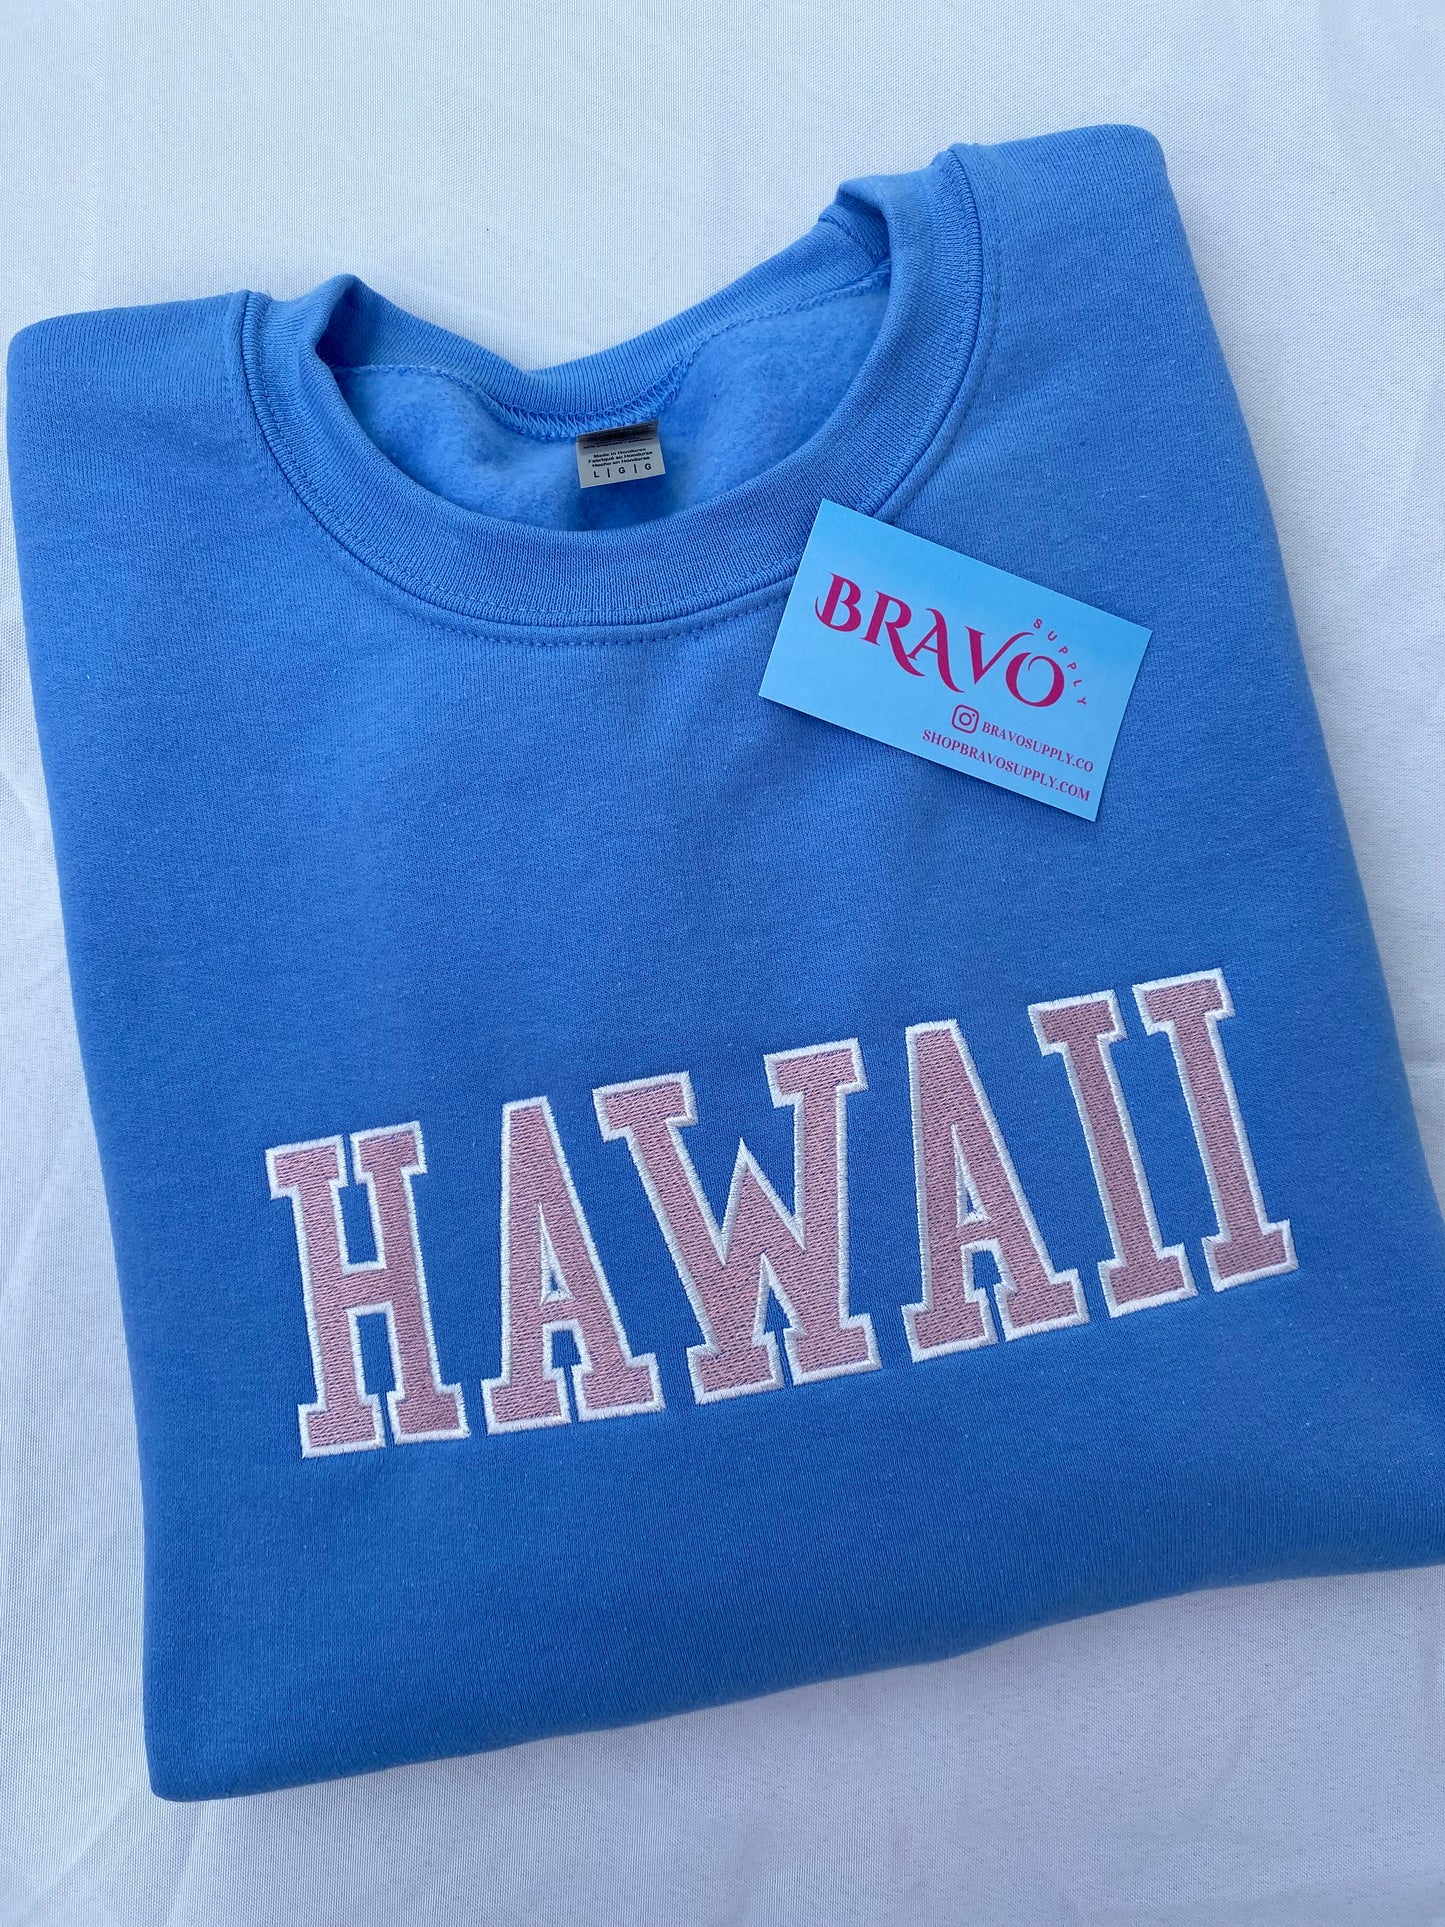 Hawaii varsity embroidered sweatshirt